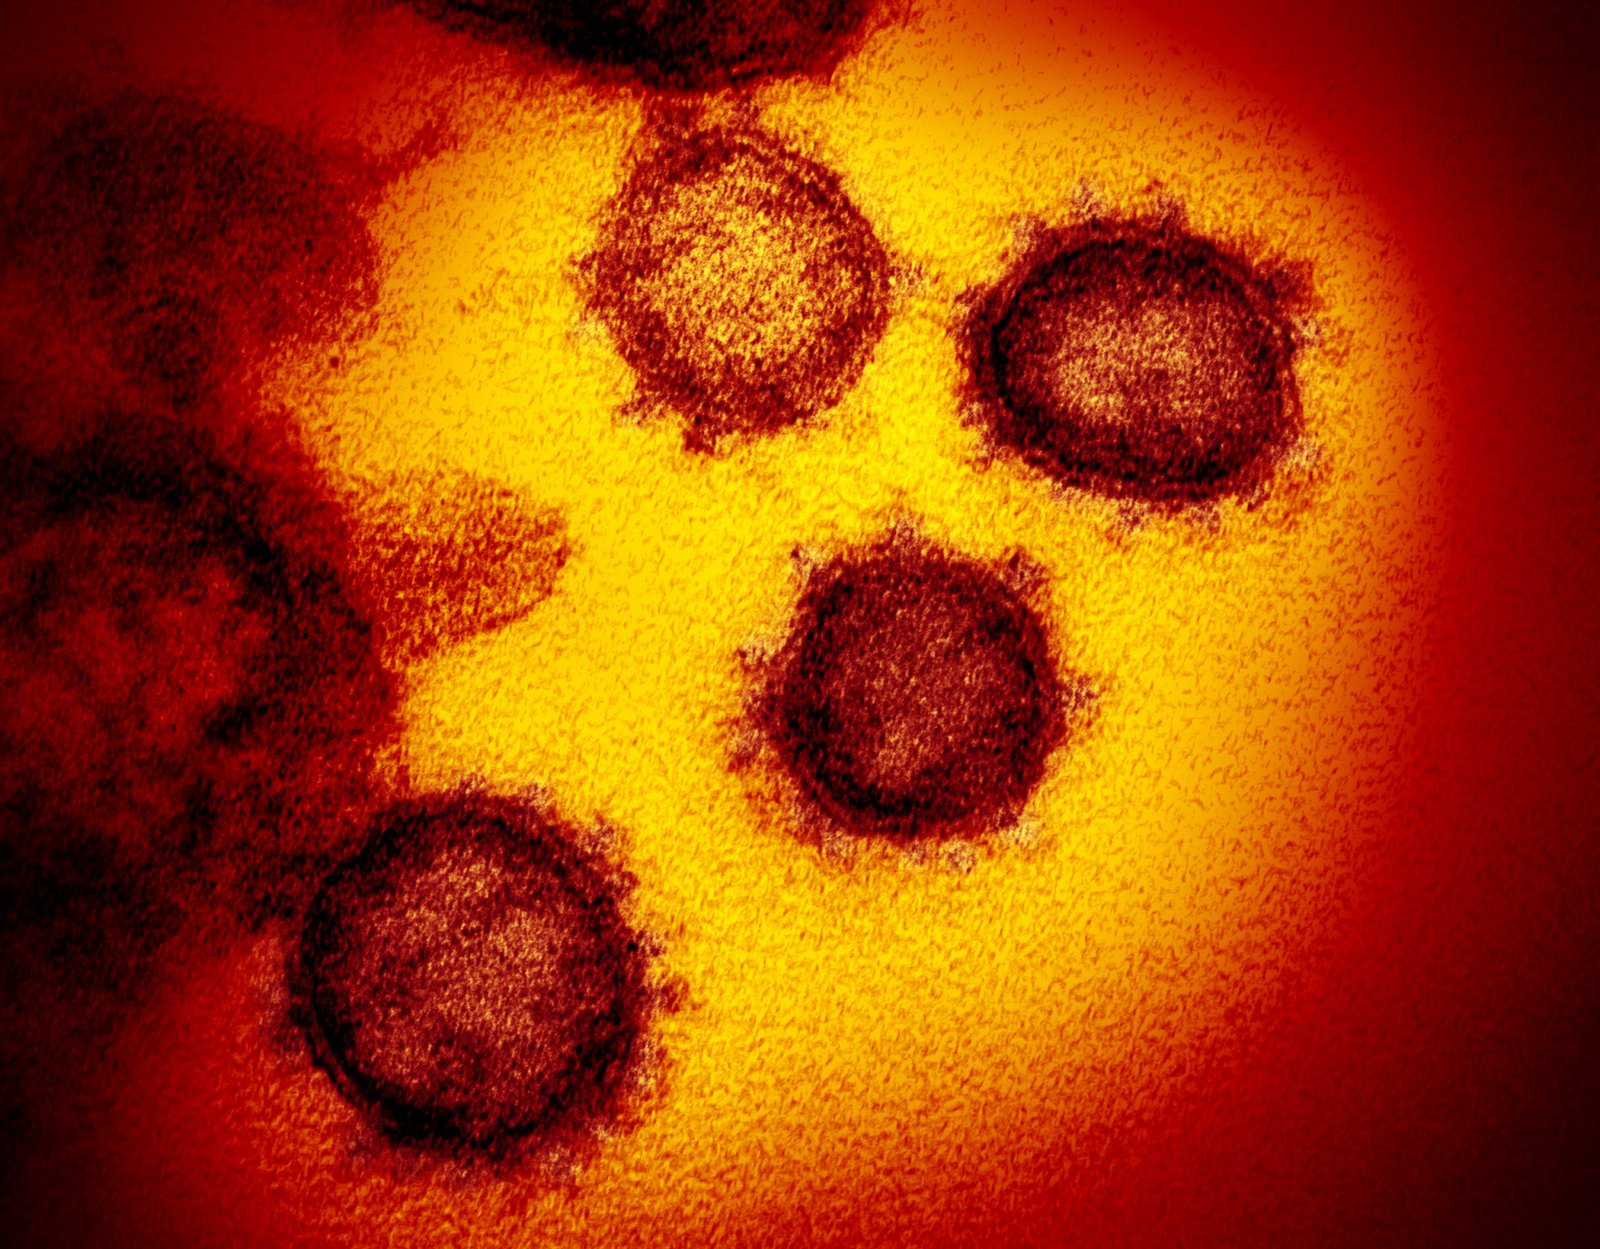 अब तक कोरोना से दुनिया में 372,000 लोग संक्रमित, 16,000 मौत : WHO